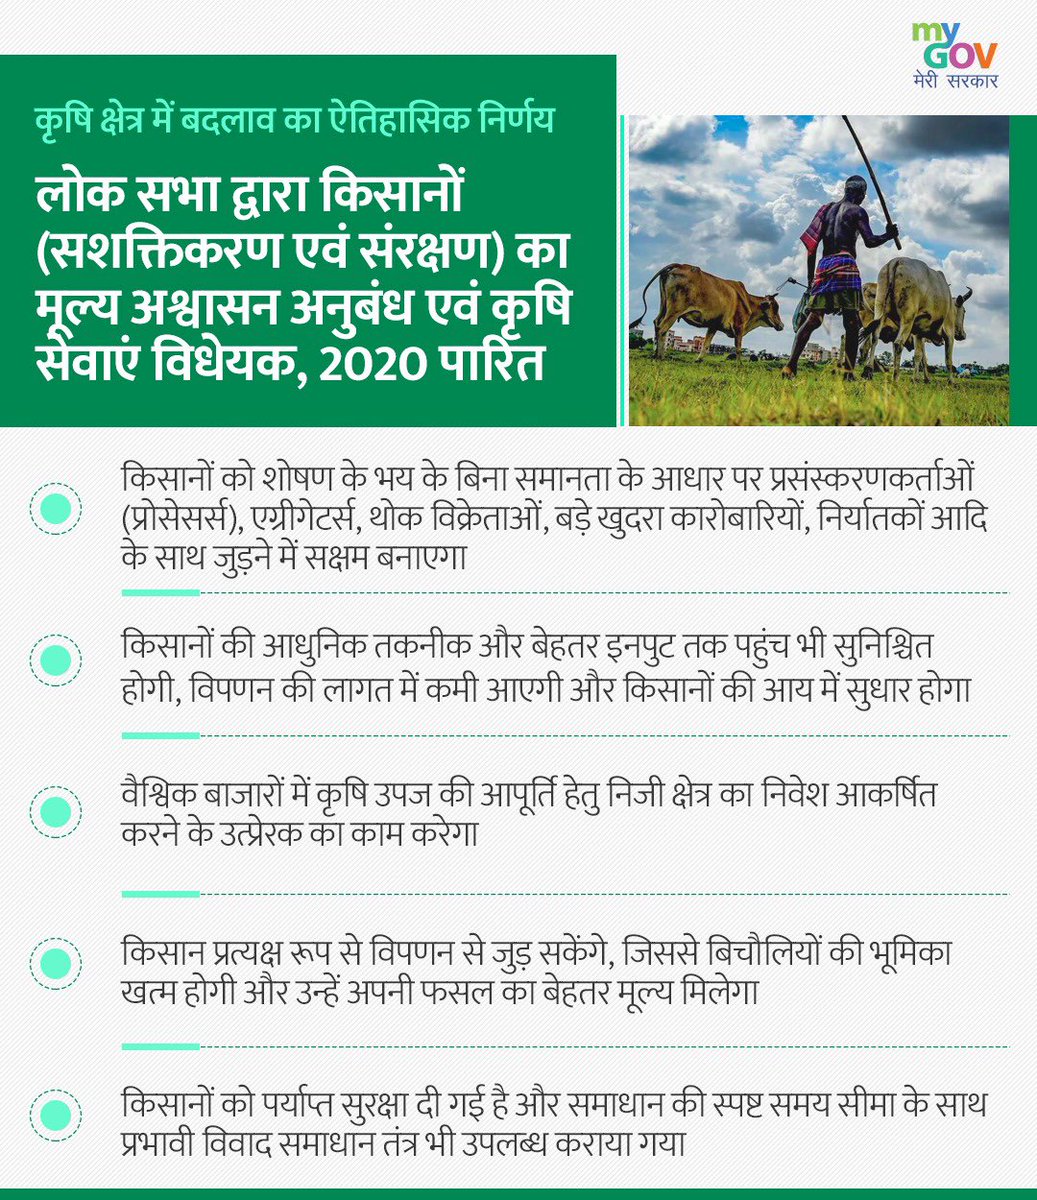 किसानों के हित में महत्वपूर्ण कृषि विधेयकों के लोकसभा में पारित होने पर PM @narendramodi जी, कृषिमंत्री @nstomar जी व किसान भाईयों को बधाई और सभी सांसदों को धन्यवाद। यह किसानों को उपज का उचित मूल्य दिलाने व उनकी आय वृद्धि में अहम भूमिका निभायेगा। #JaiKisan #AatmaNirbharKrishi